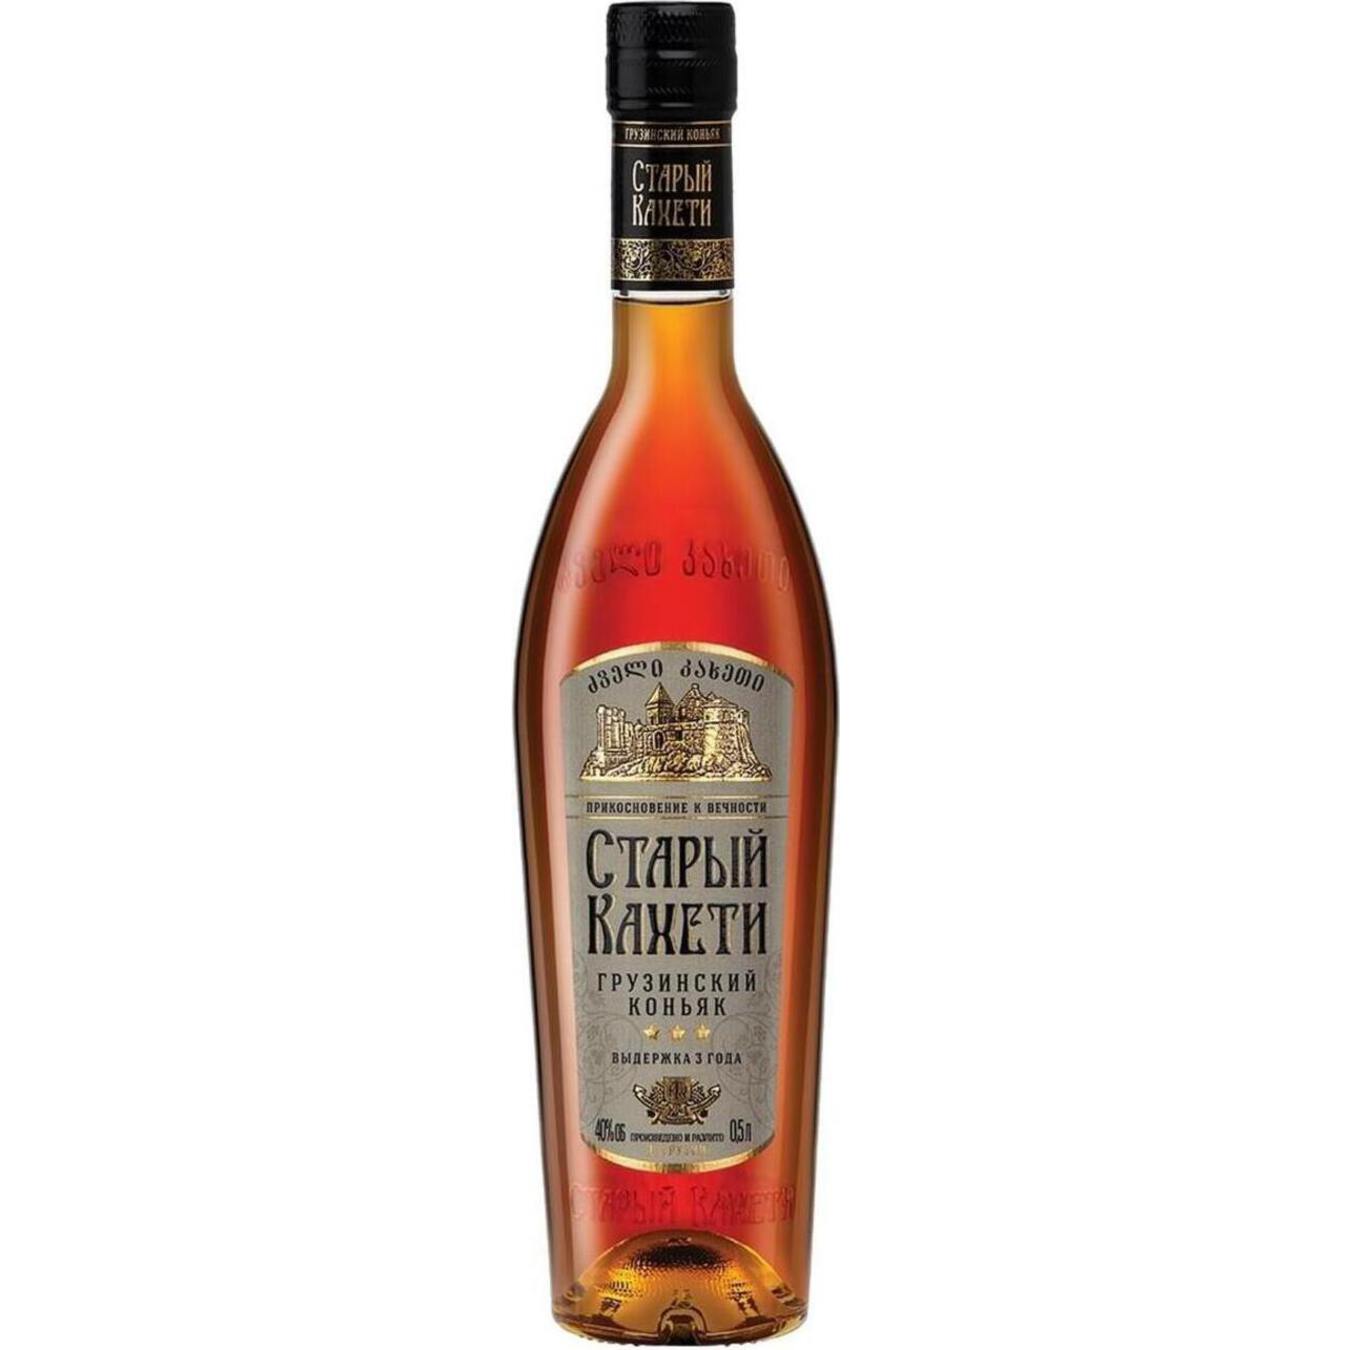 Staryi Kakheti 3 stars Cognac 40% 0,5l